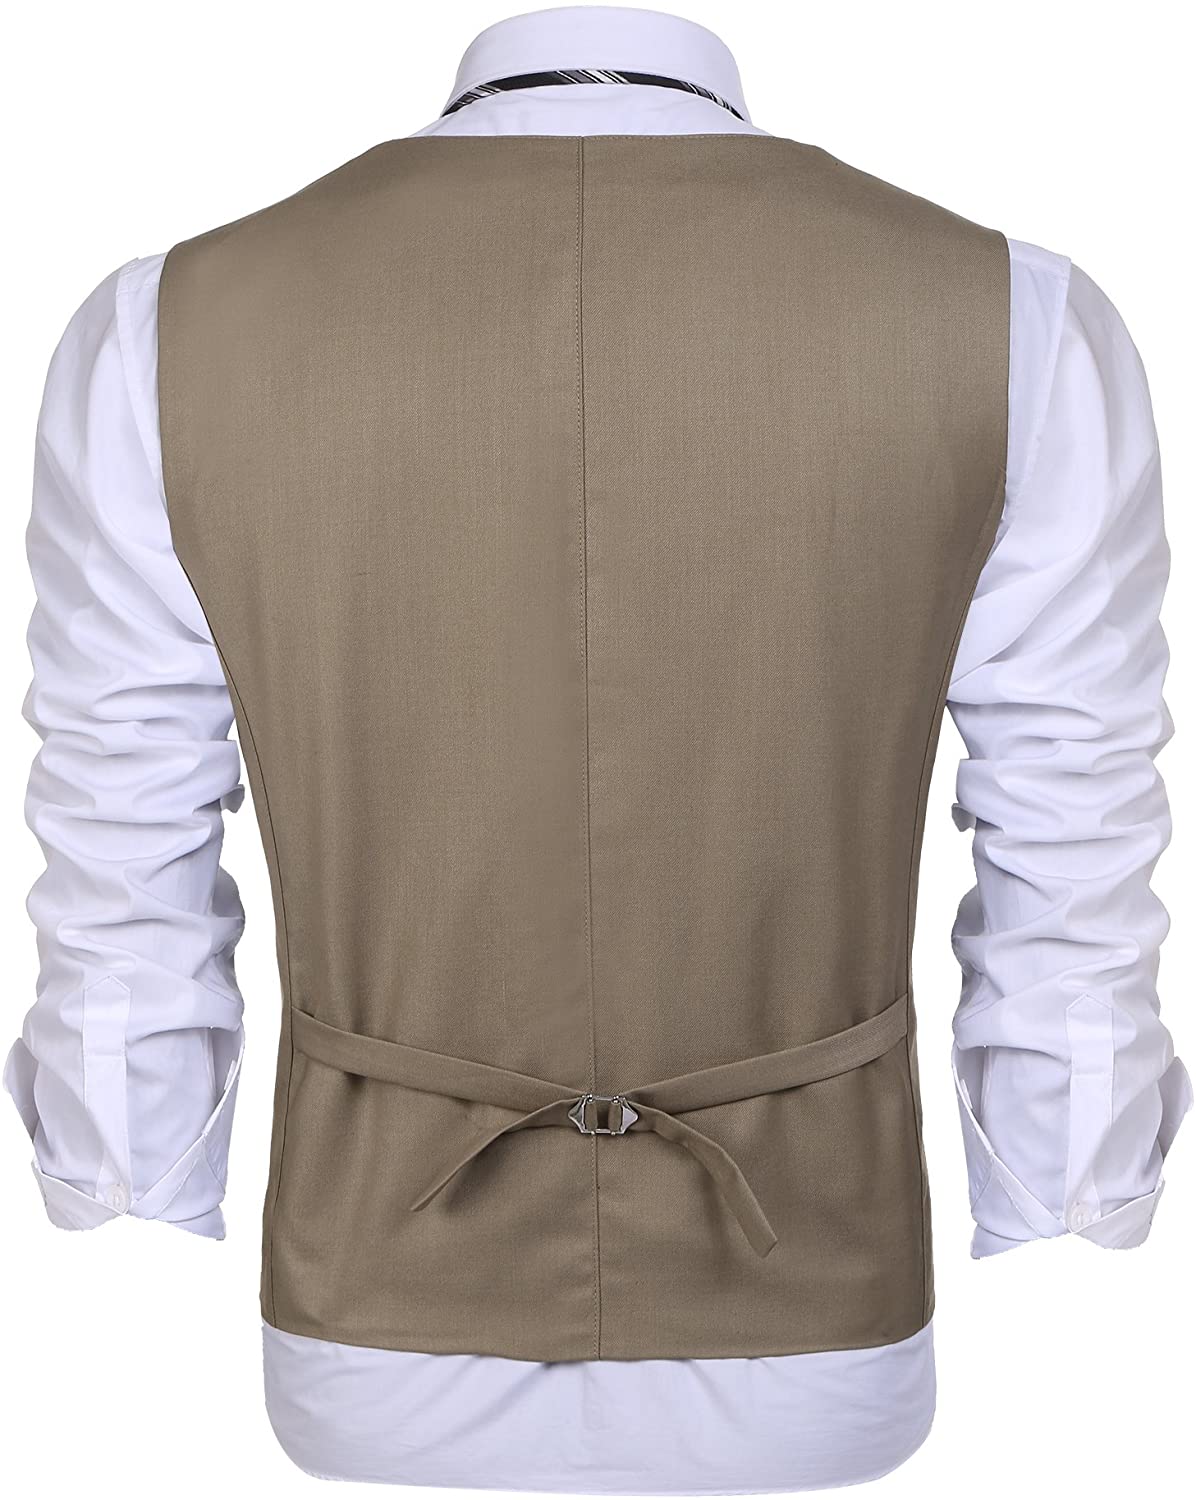 COOFANDY Men's Business Suit Vest Layered Plaid Dress Vest Waistcoat ...